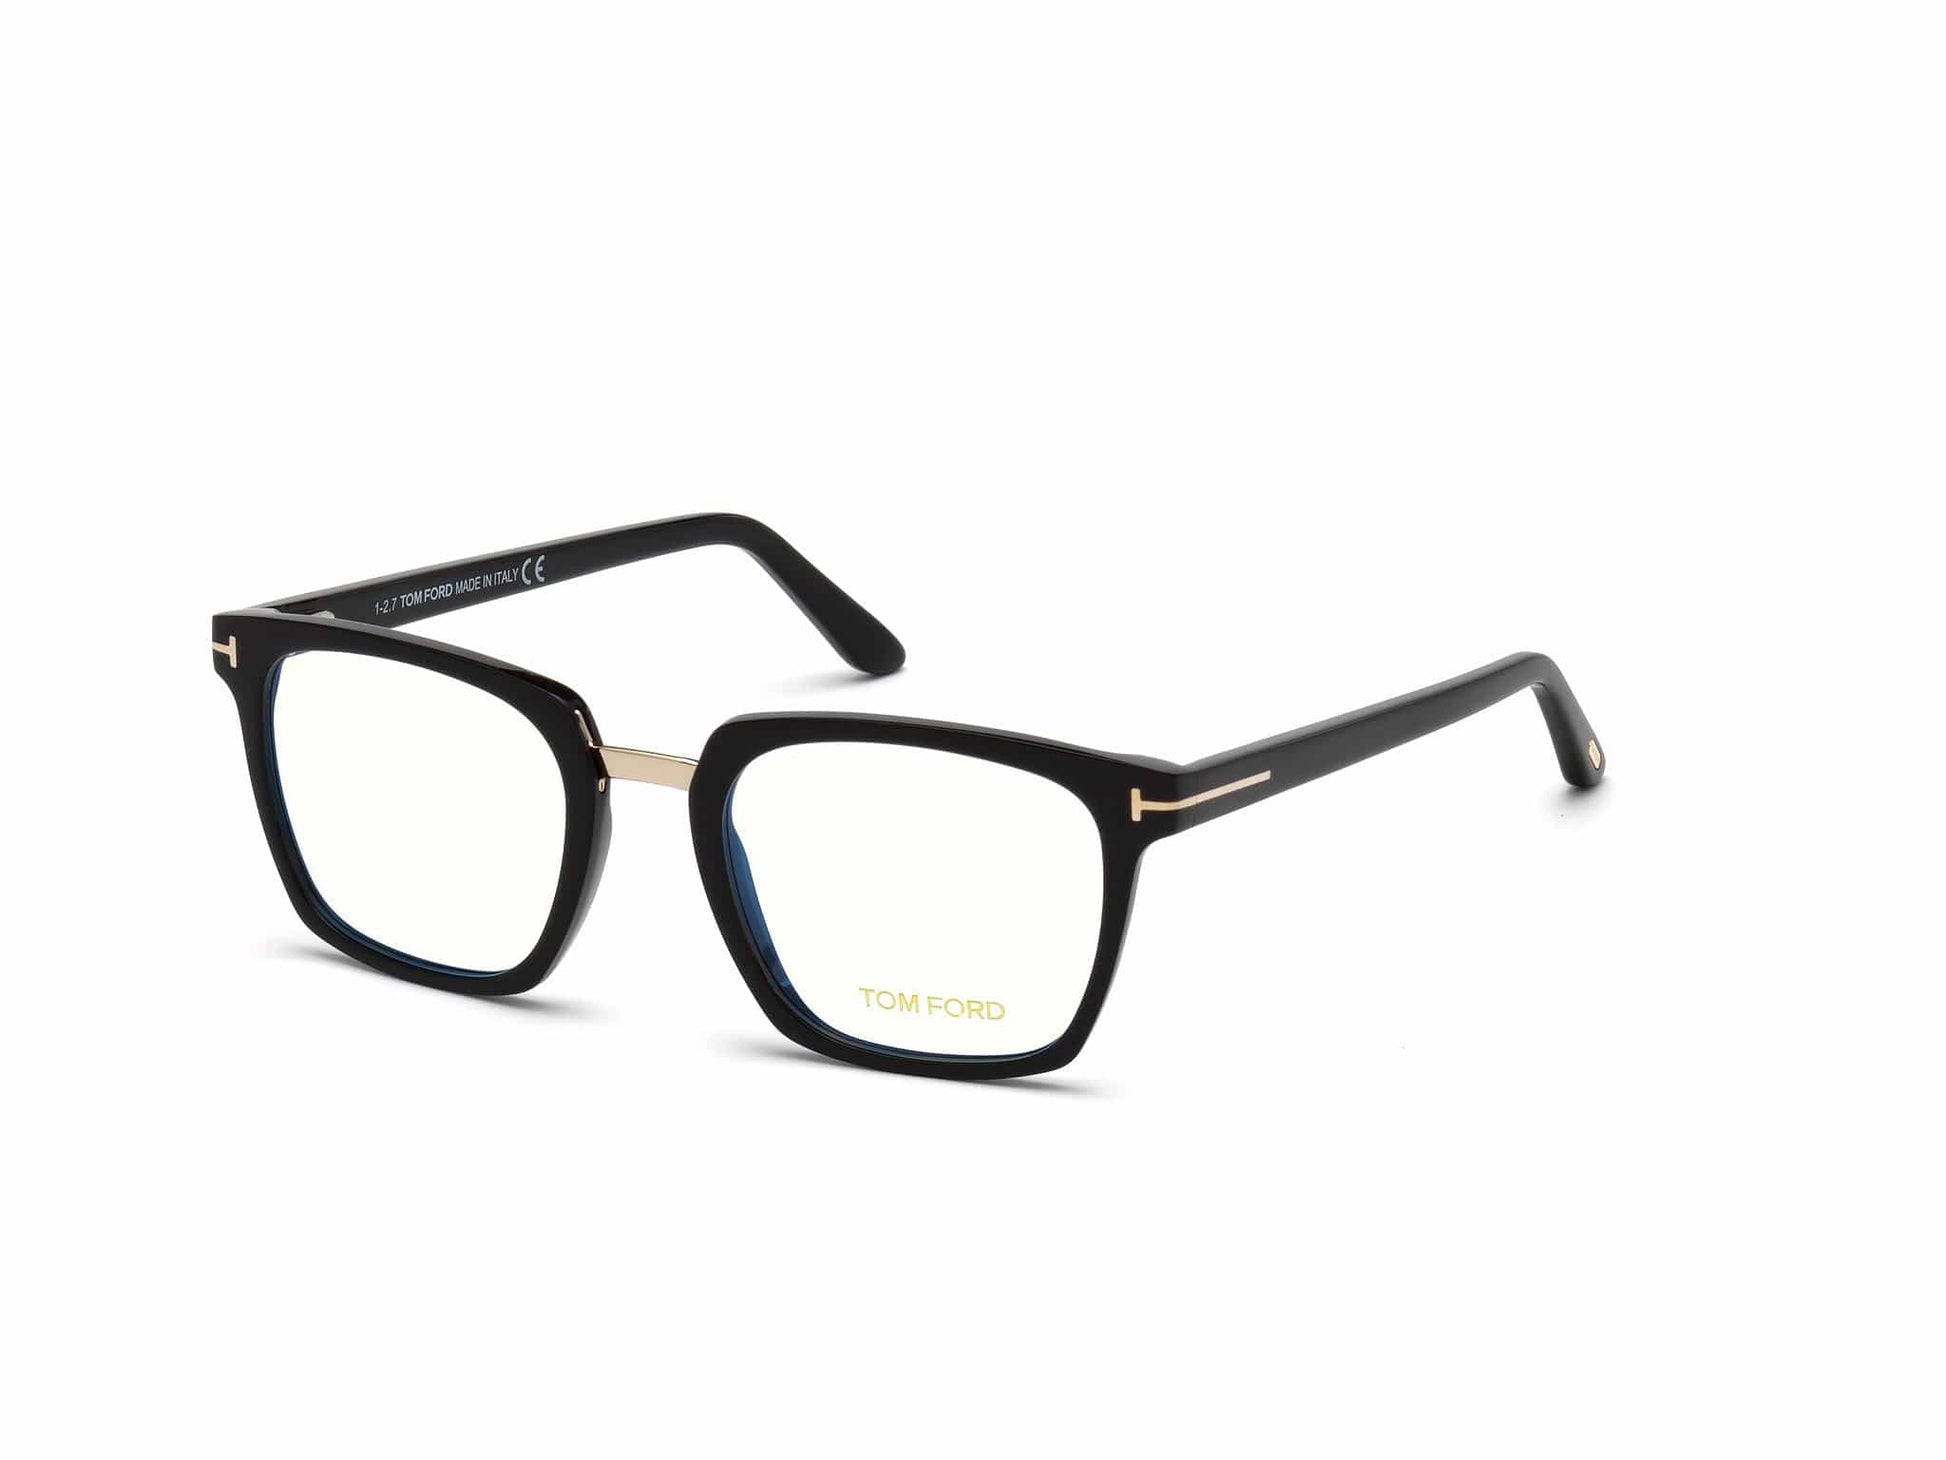 Tom Ford FT5523-B Geometric Eyeglasses 001-001 - Shiny Black, Shiny Rose Gold Bridge & "t" Logo/ Blue Block Lenses